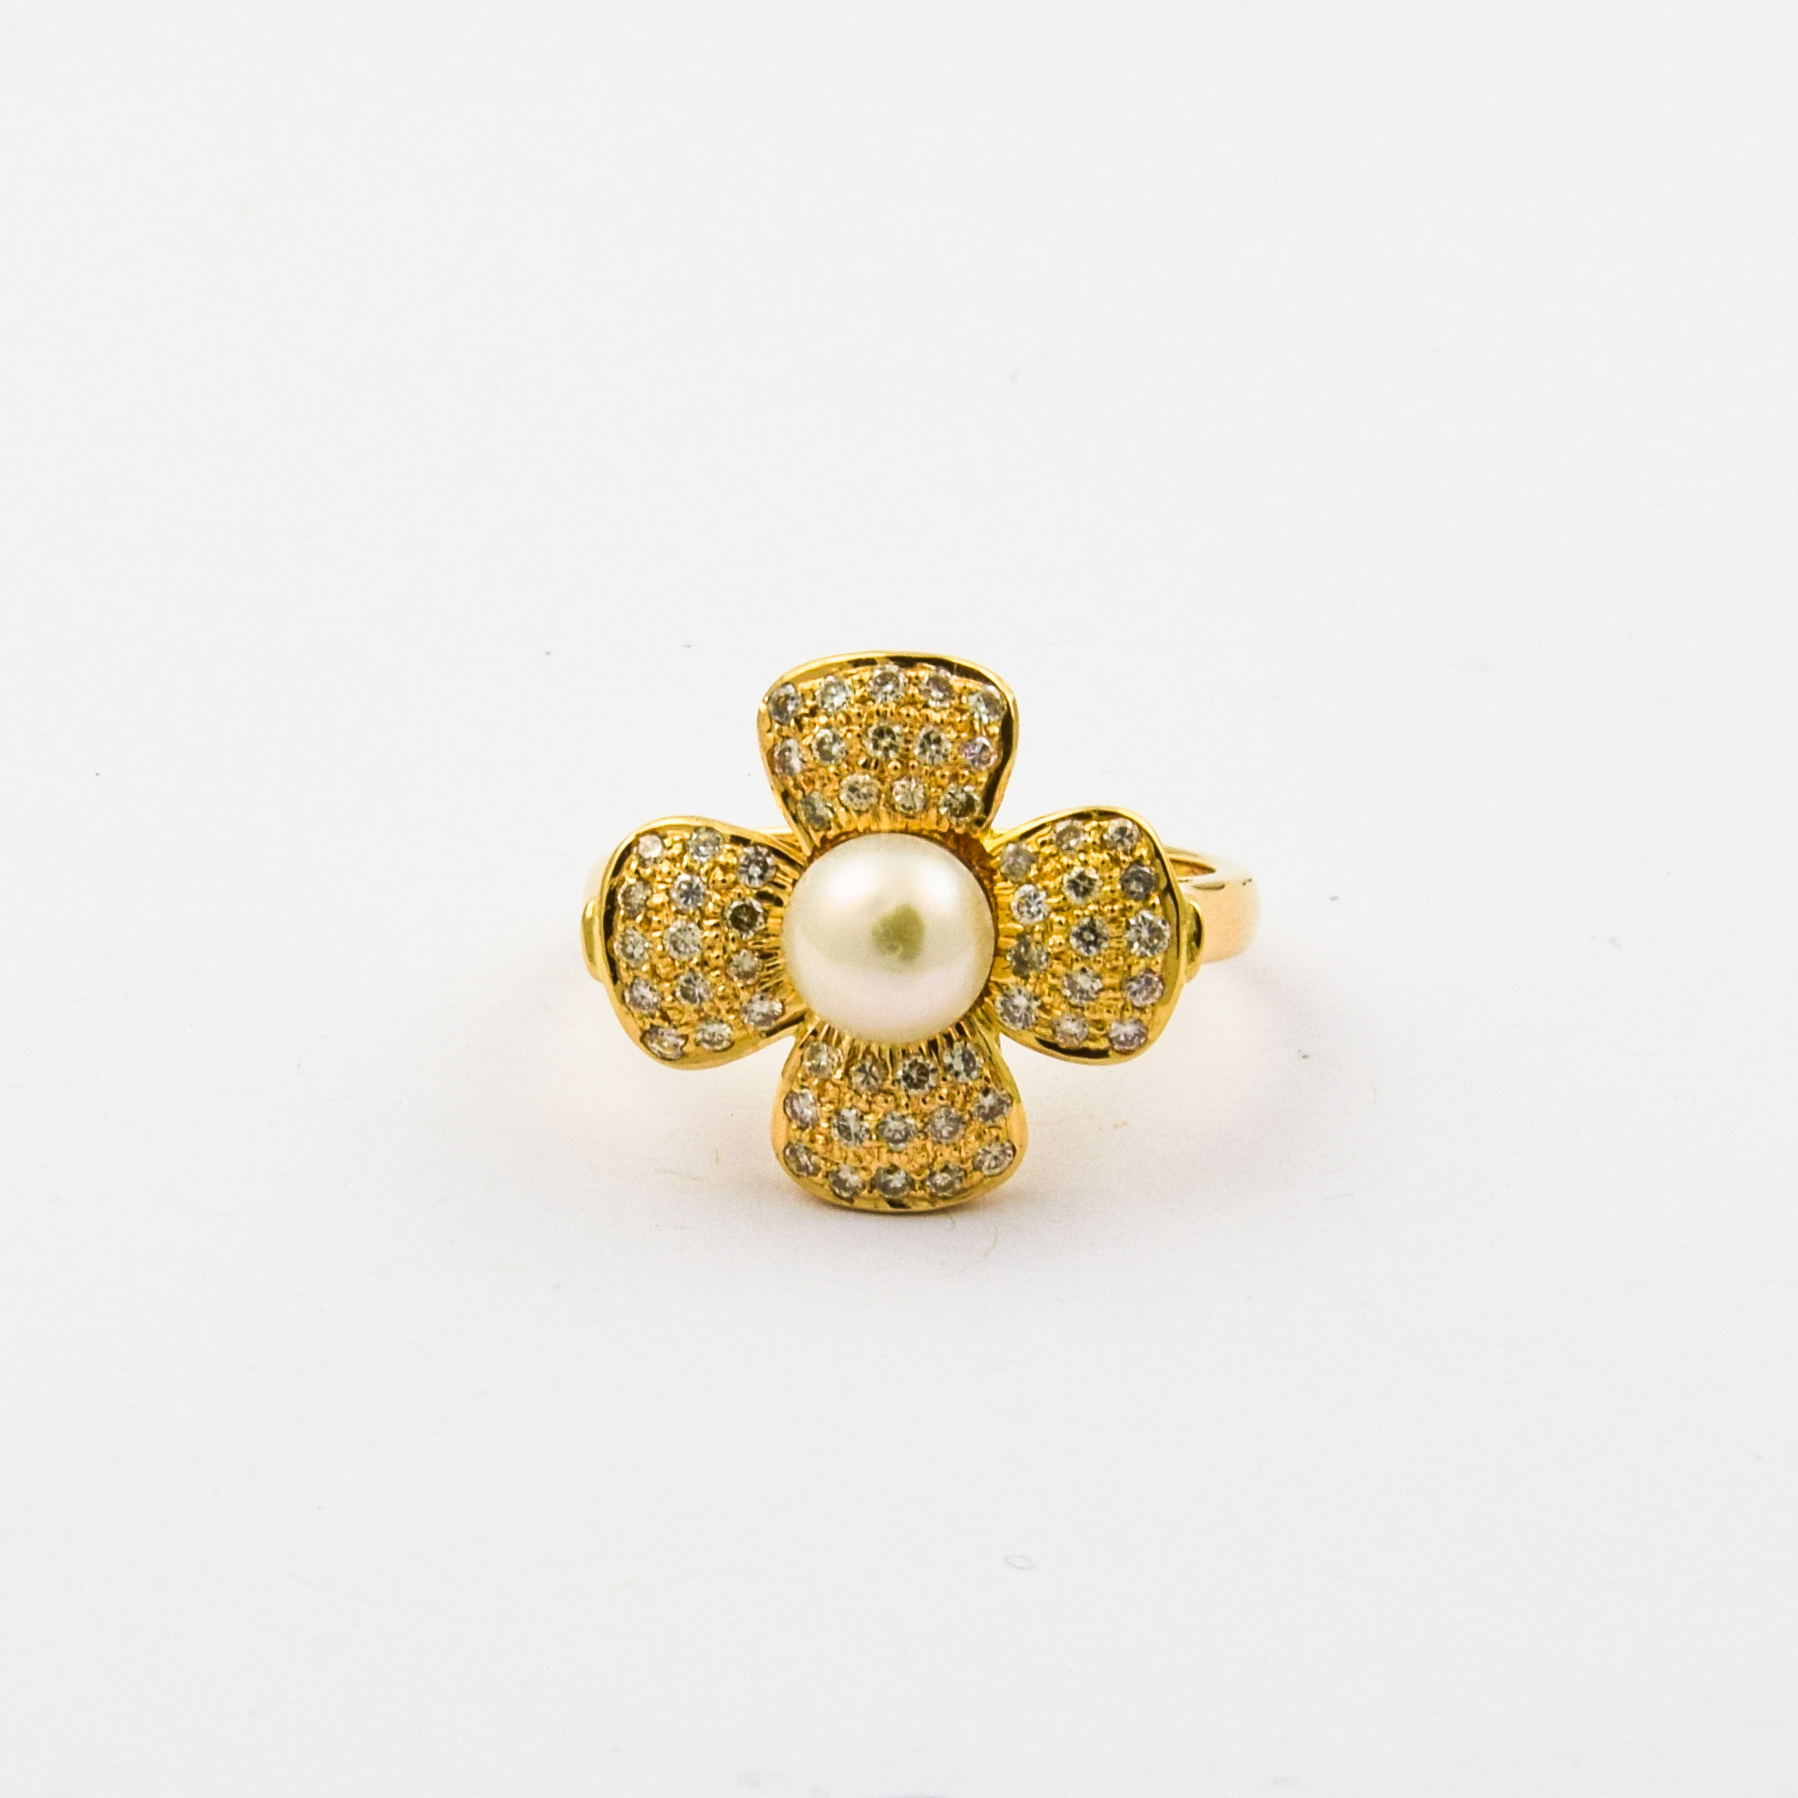 Ring Blume aus 750 Gelbgold mit Perle und Brillant, nachhaltiger second hand Schmuck perfekt aufgearbeitet